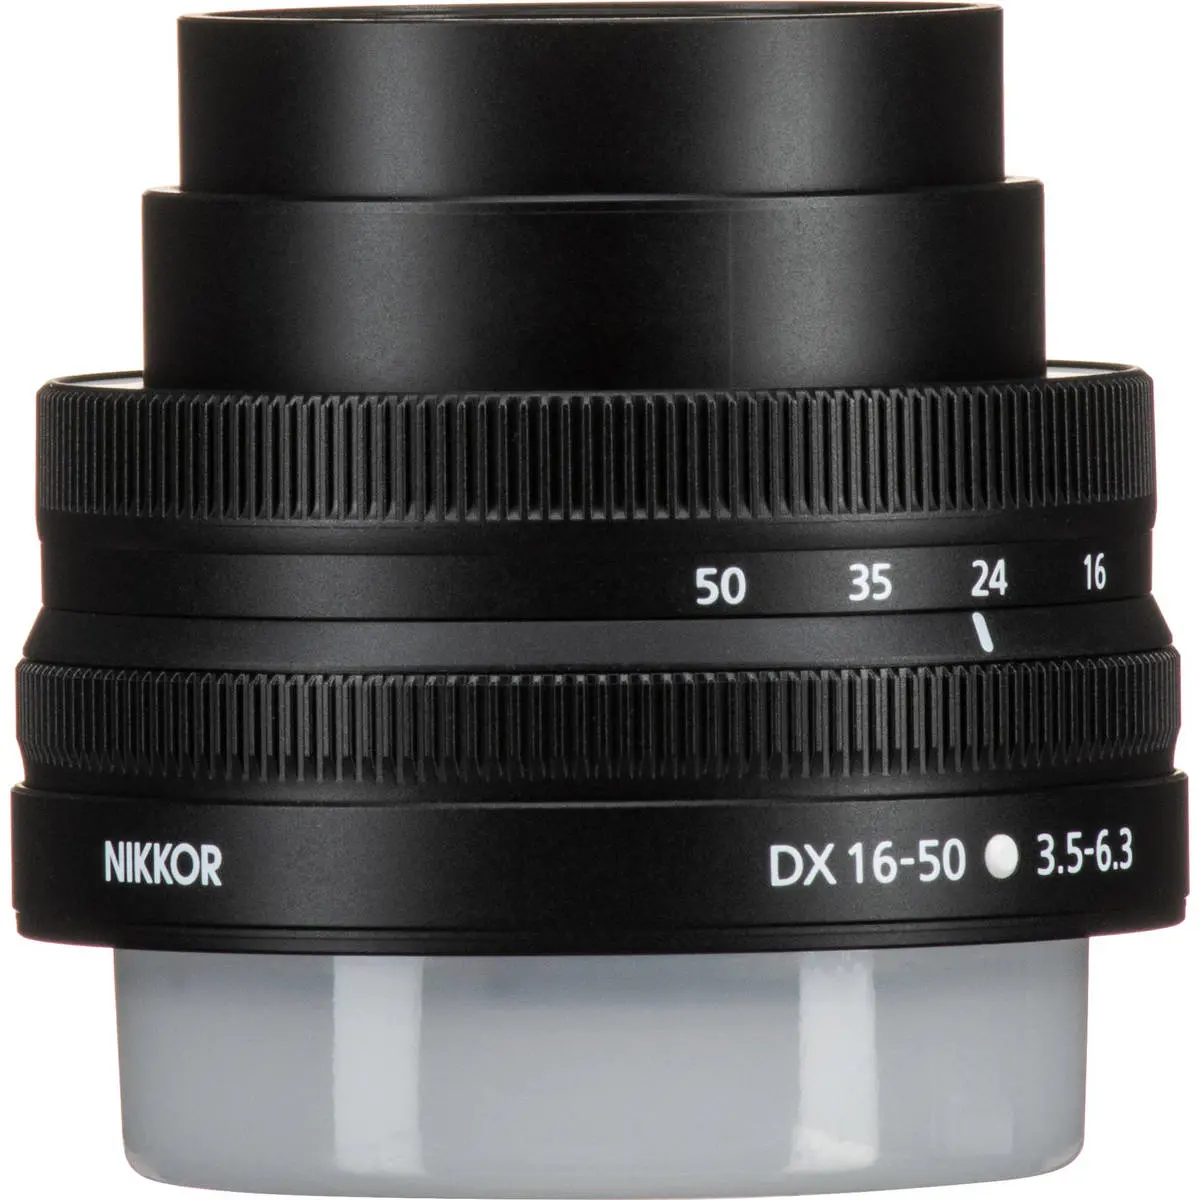 3. Nikon NIKKOR Z DX 16-50MM F/3.5-6.3 VR (kit lens)